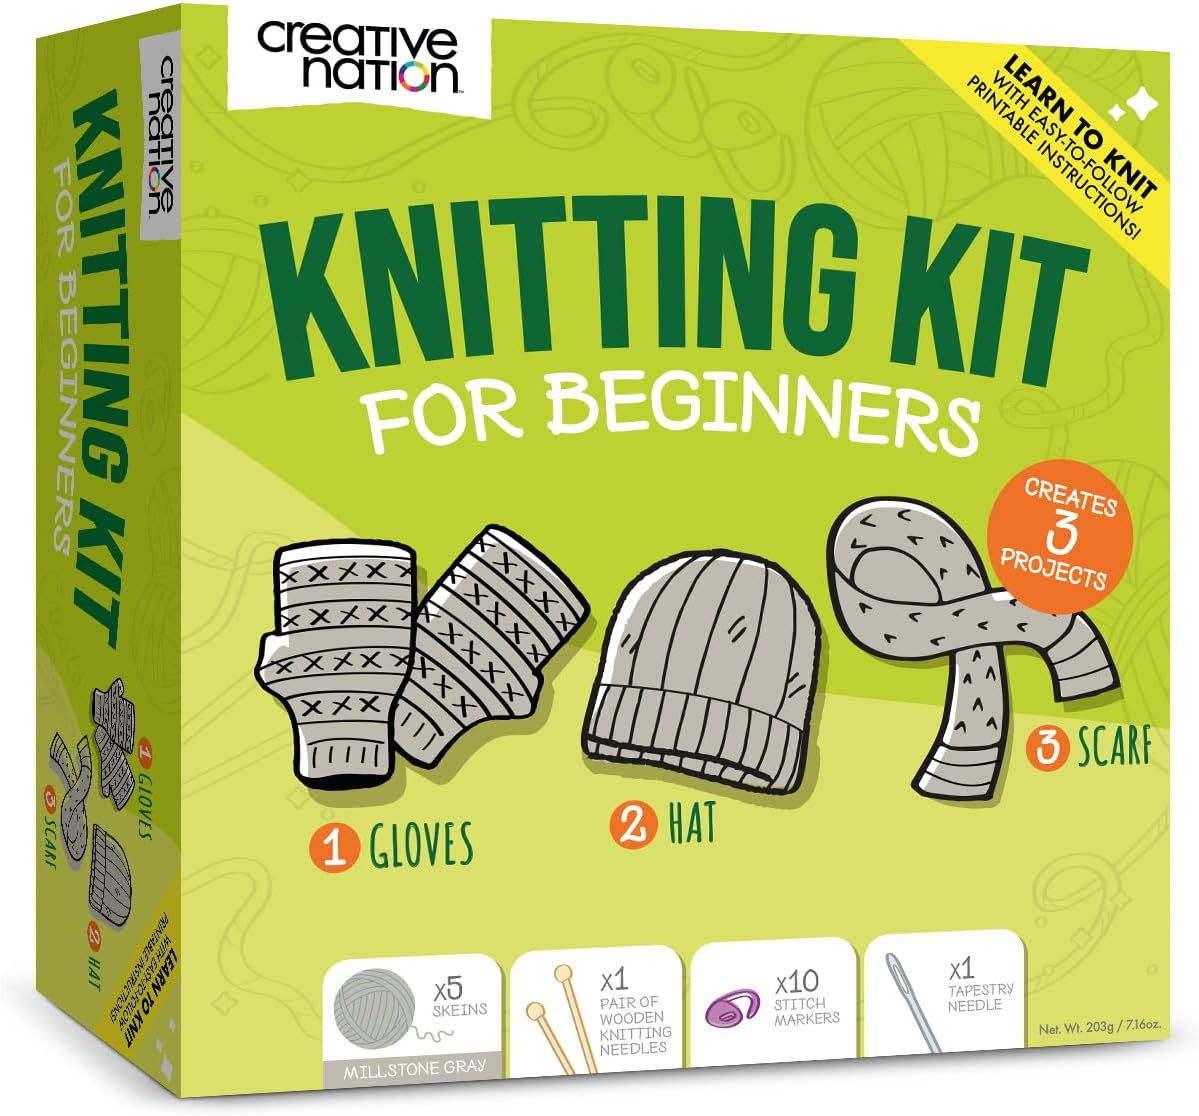 Creative Nation Knitting Kit for Beginners